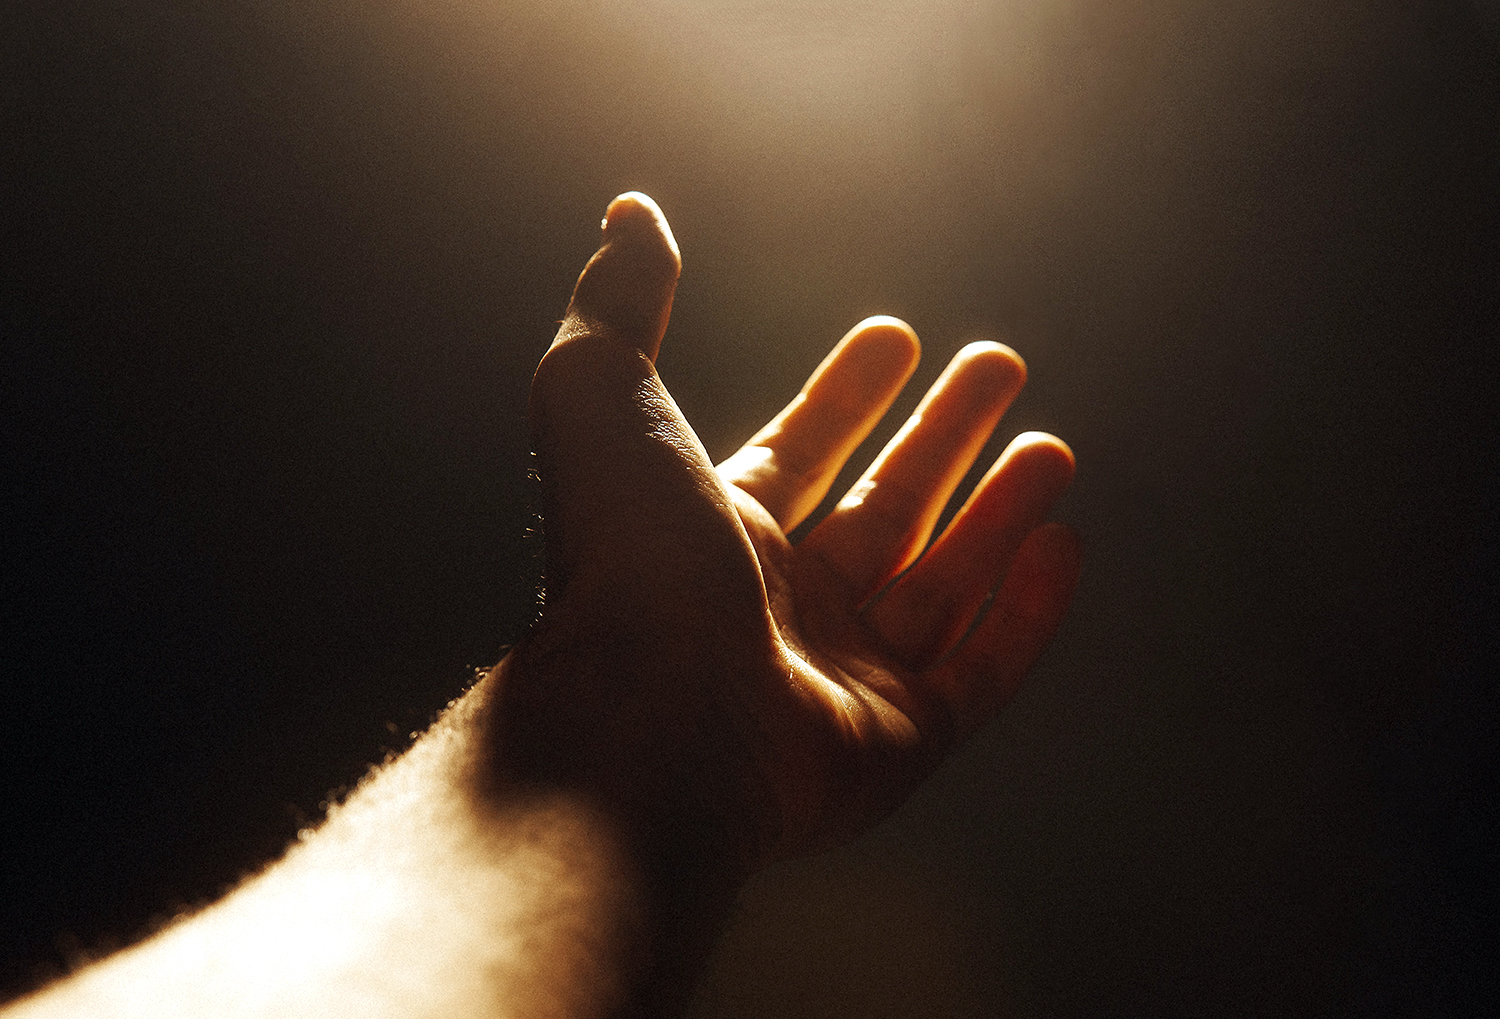 En hand sträcks mot ljuset.